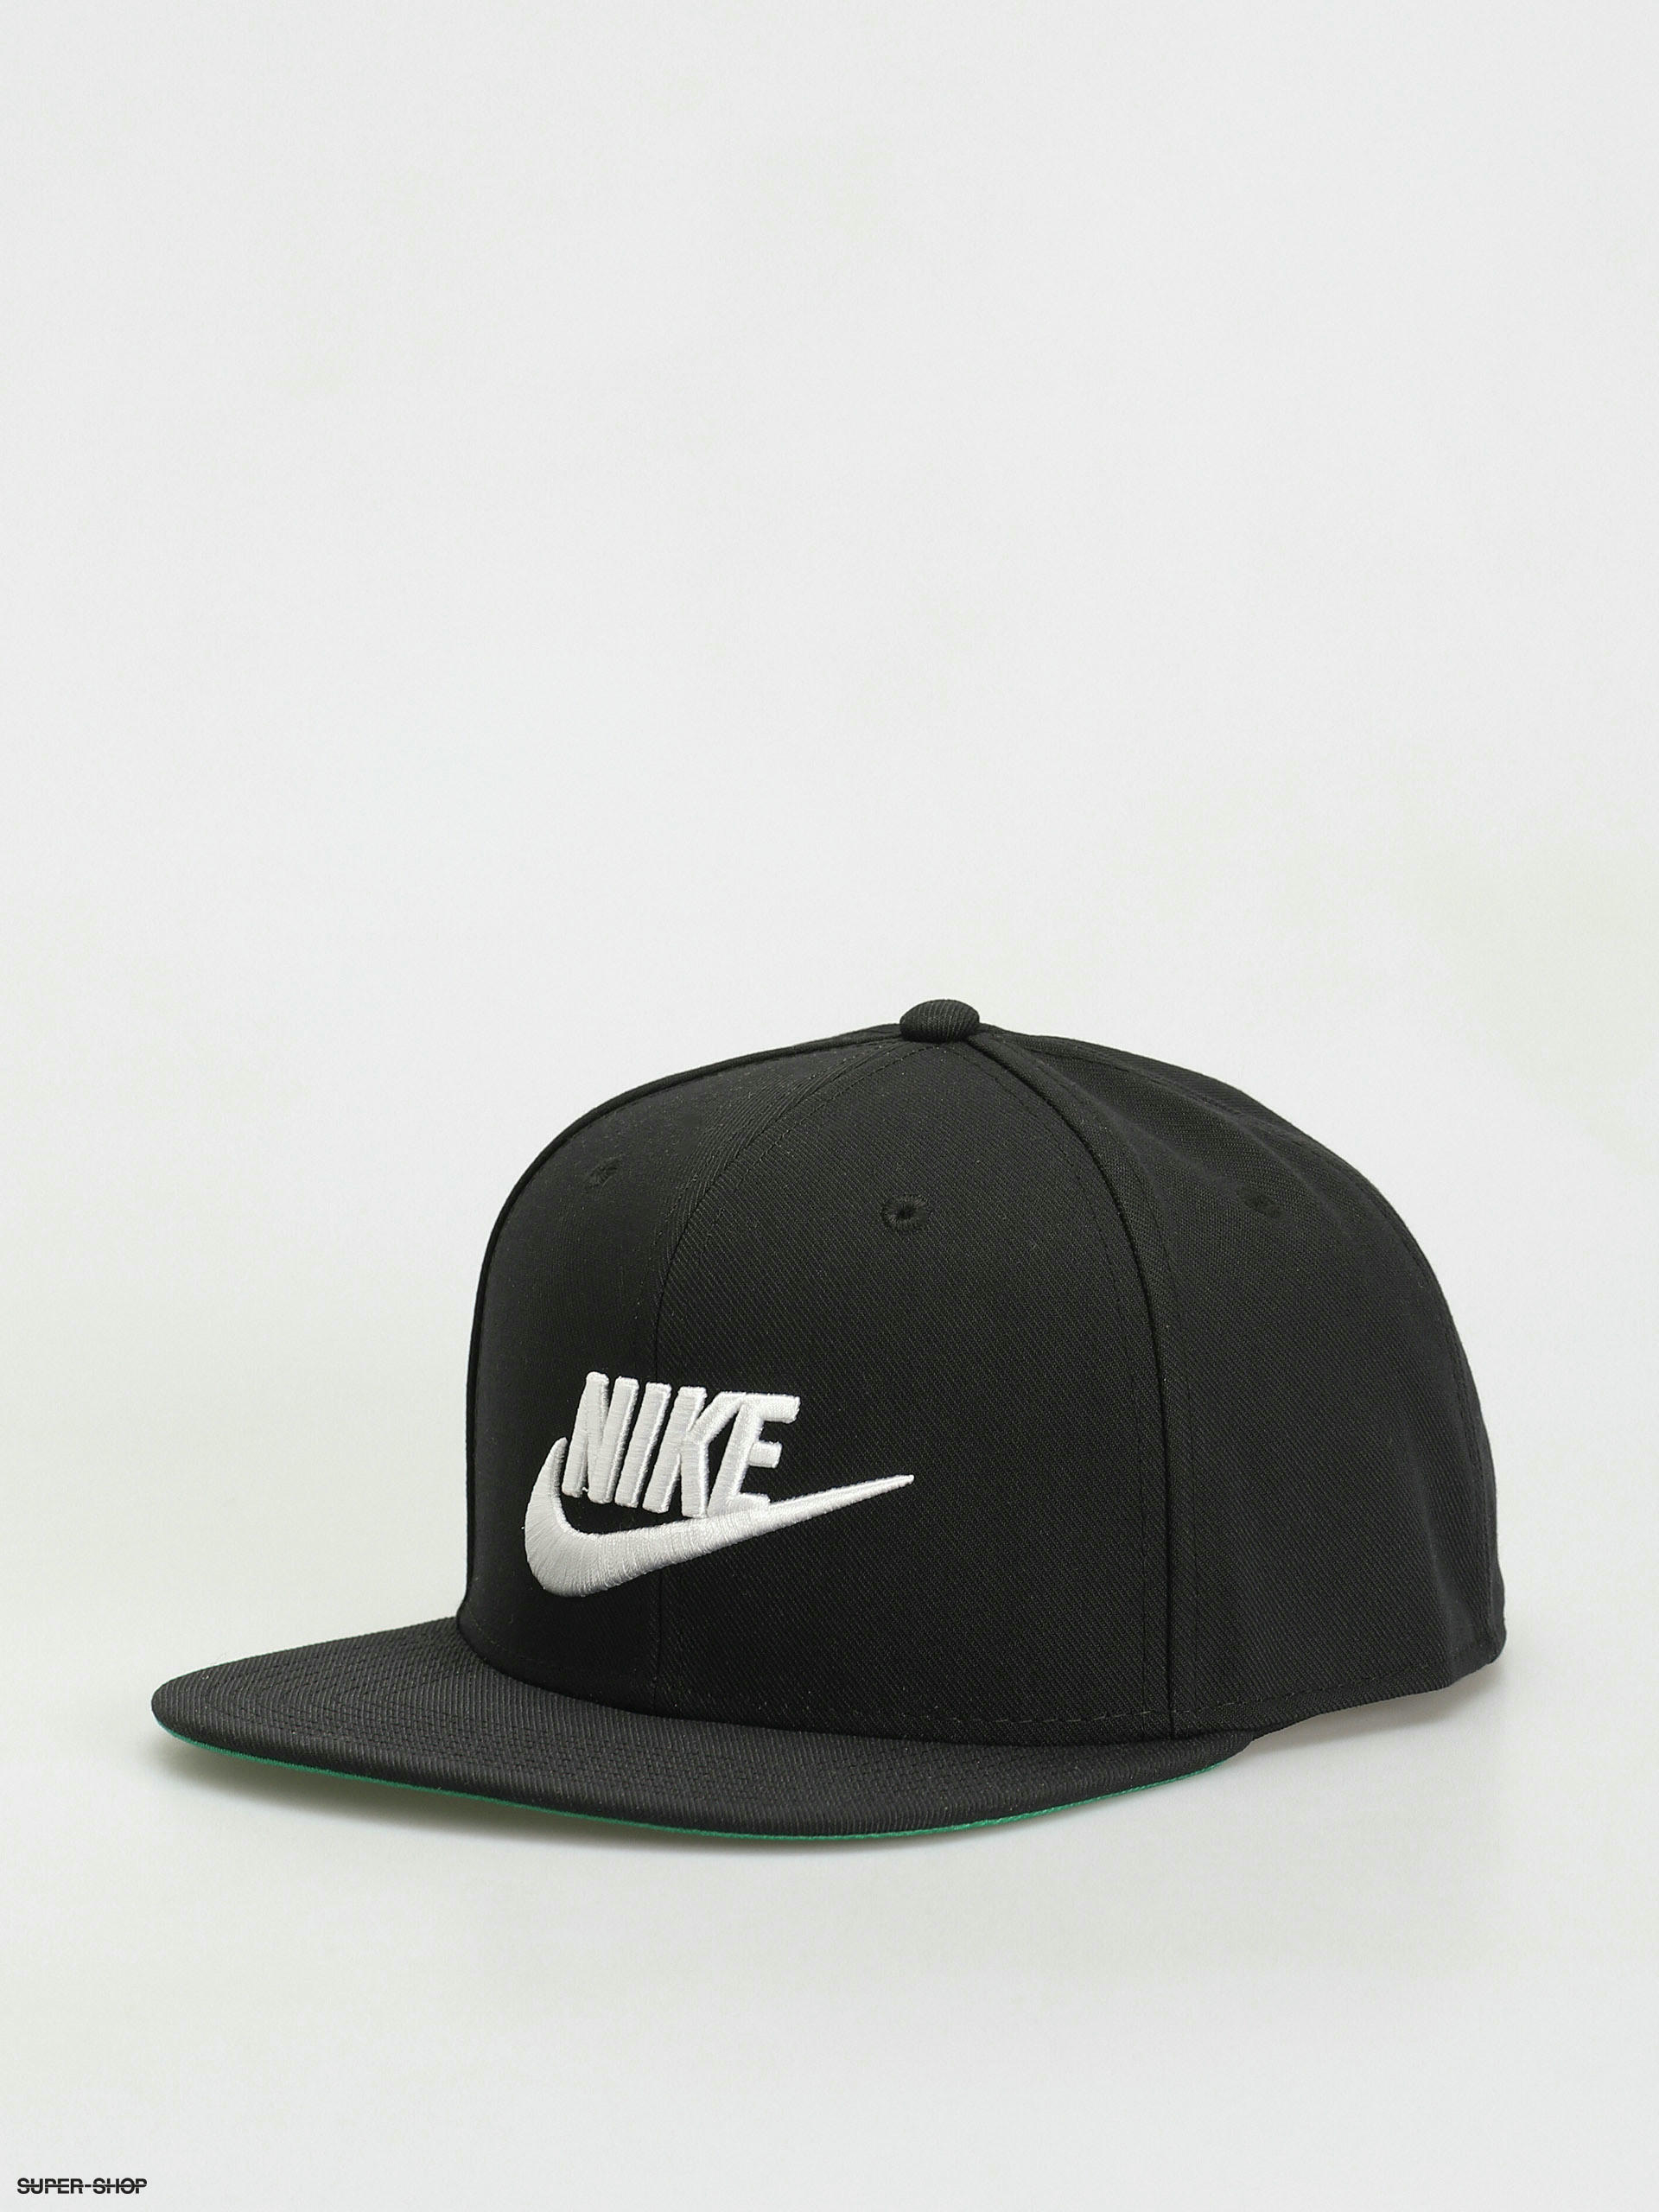 Nike Sportswear Dri Fit Pro Futura Cap (black/pine